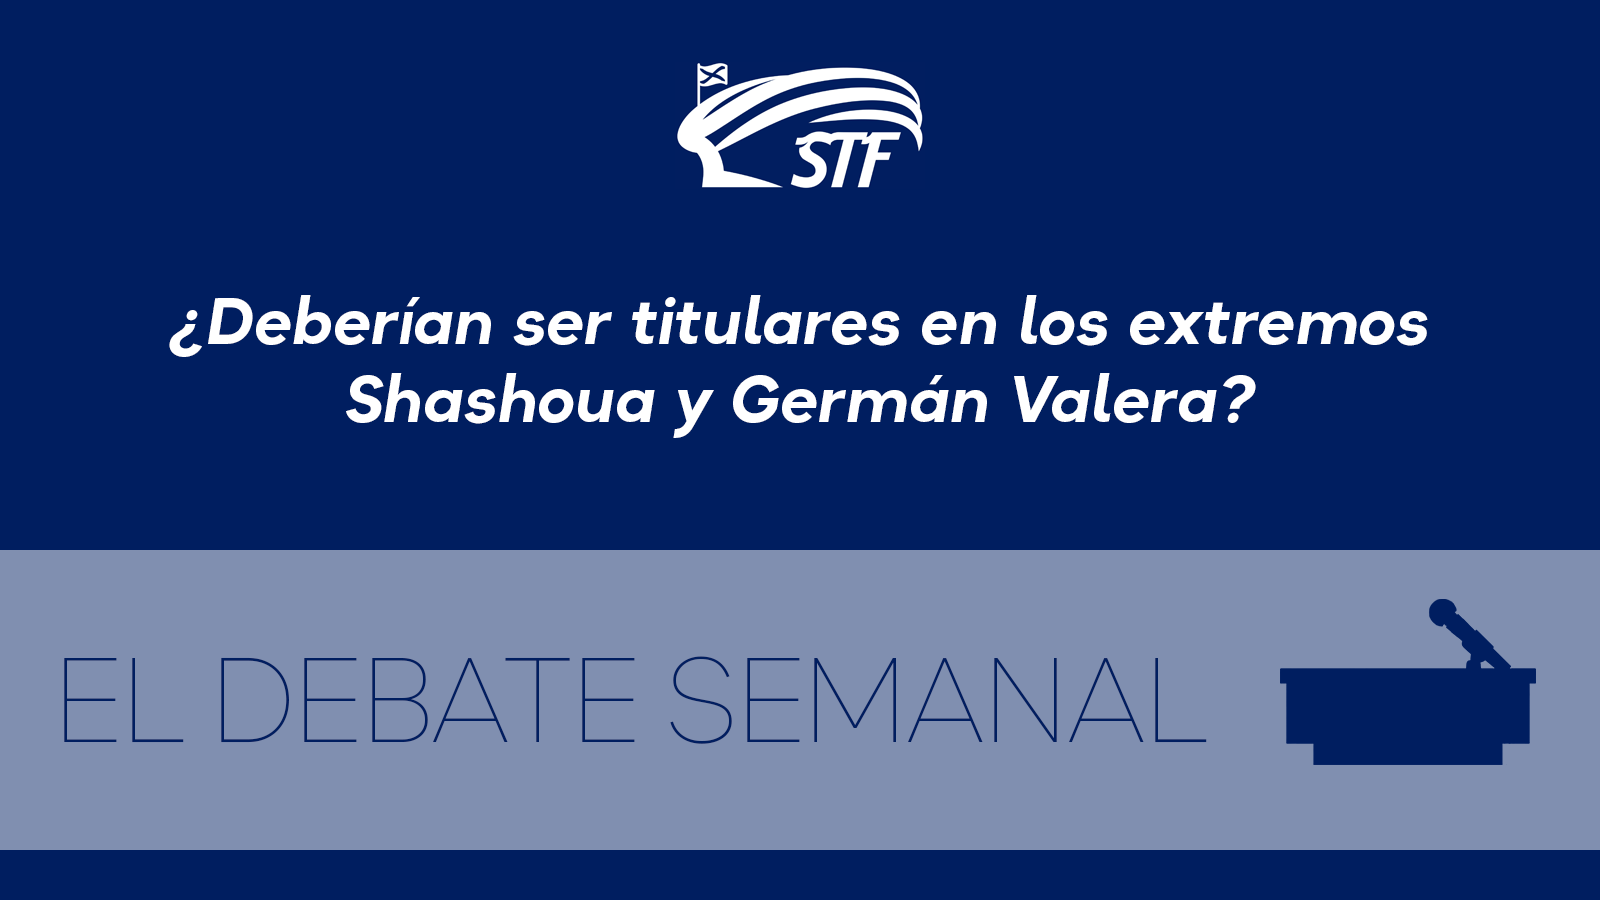 El Debate Semanal: ¿Deberían ser titulares en los extremos Shashoua y Germán Valera? El 70,83 por ciento dice sí